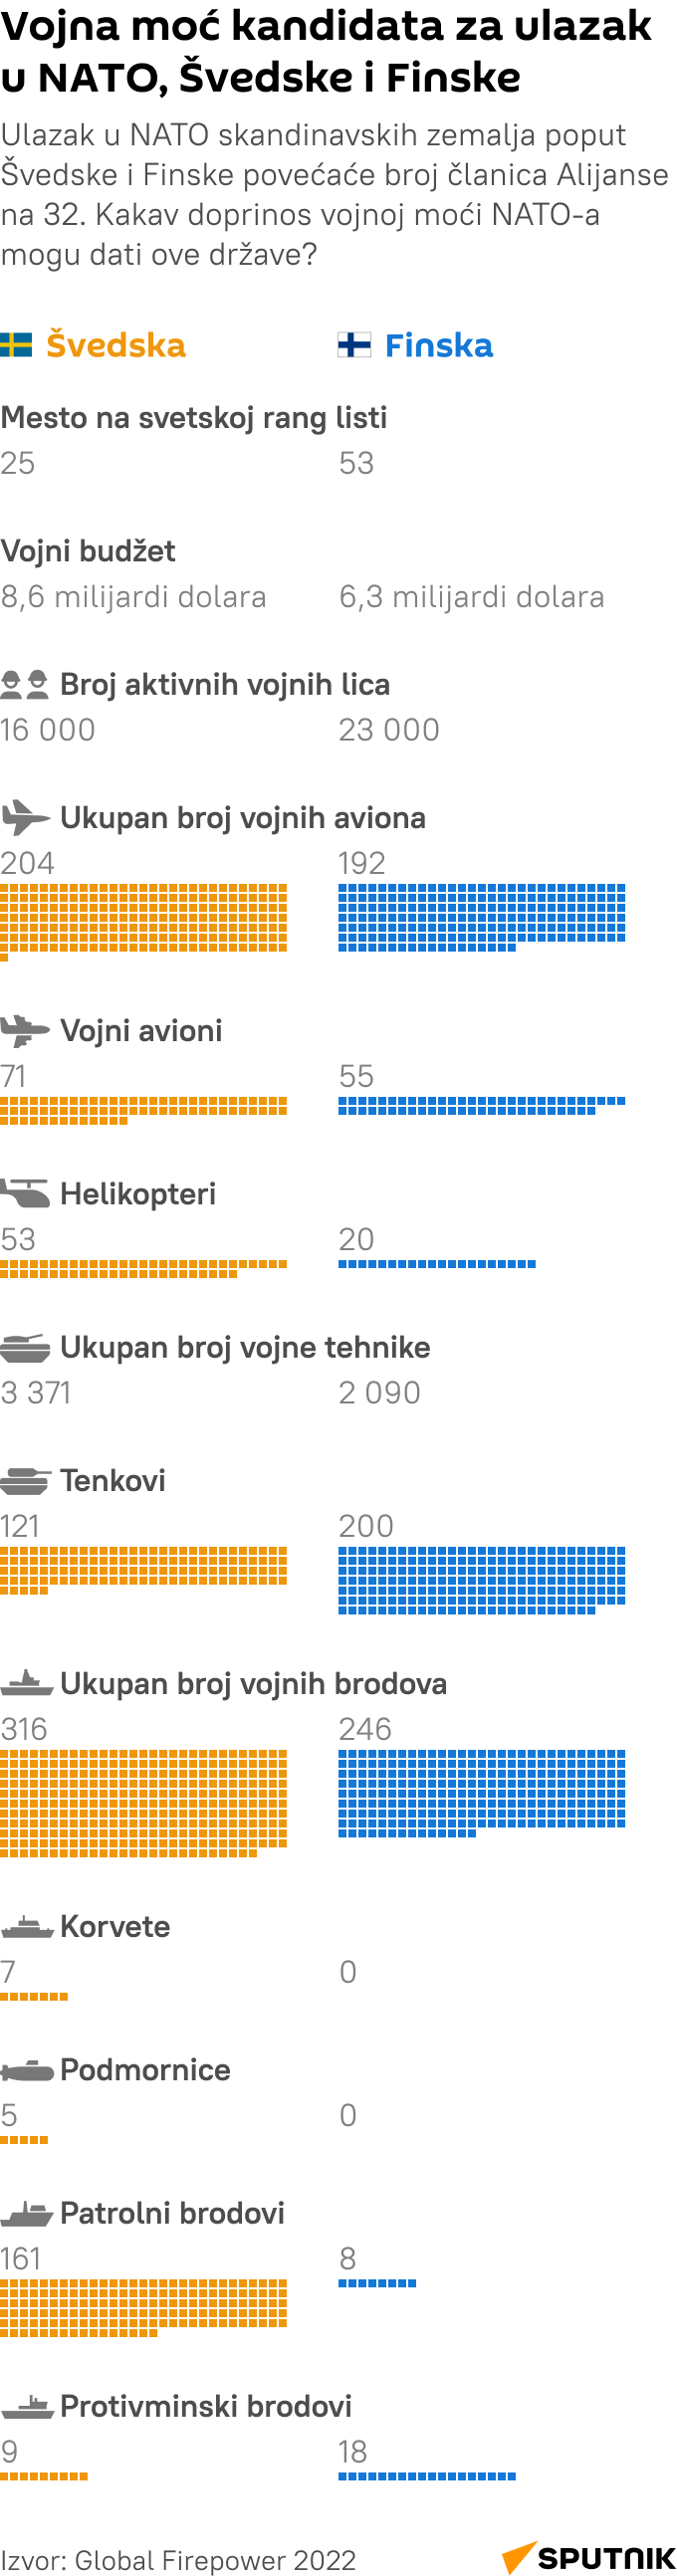 Vojna moć kandidata za ulazak u NATO, Švedske i Finske  -  Infografika  LATINICA  mob  - Sputnik Srbija